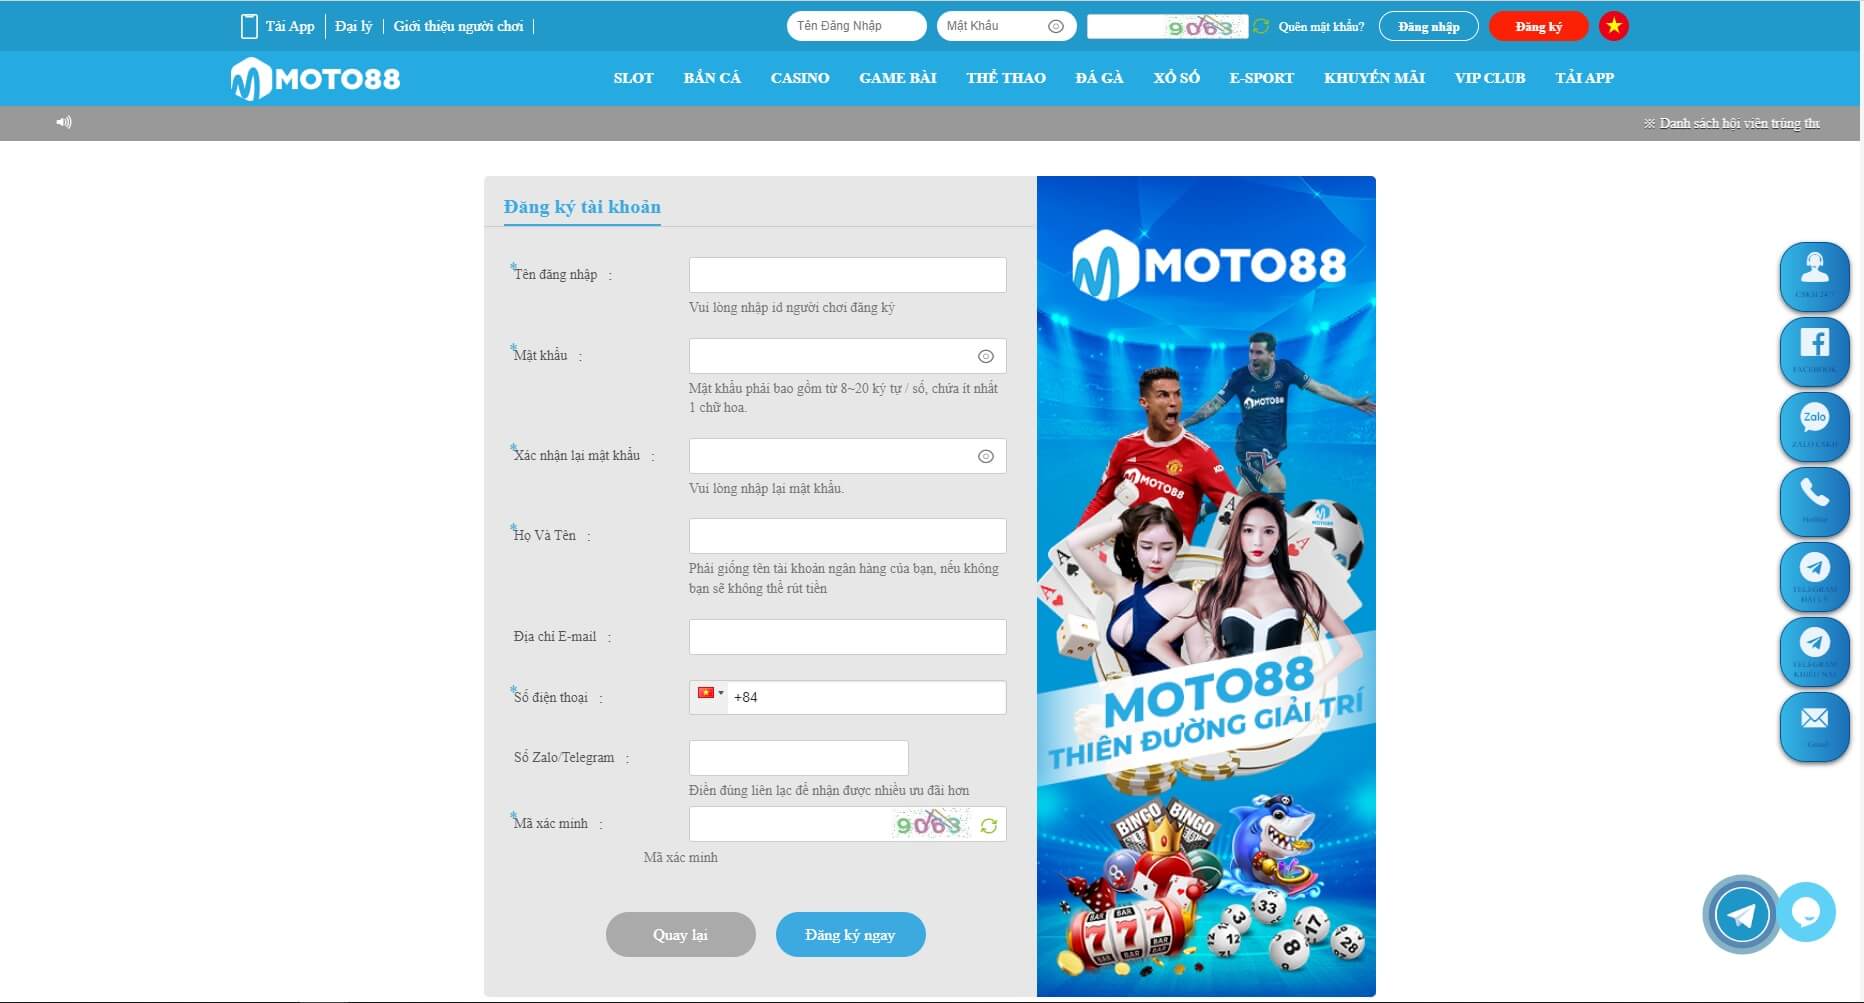 Hướng dẫn đăng ký và đăng nhập tài khoản tại Moto88